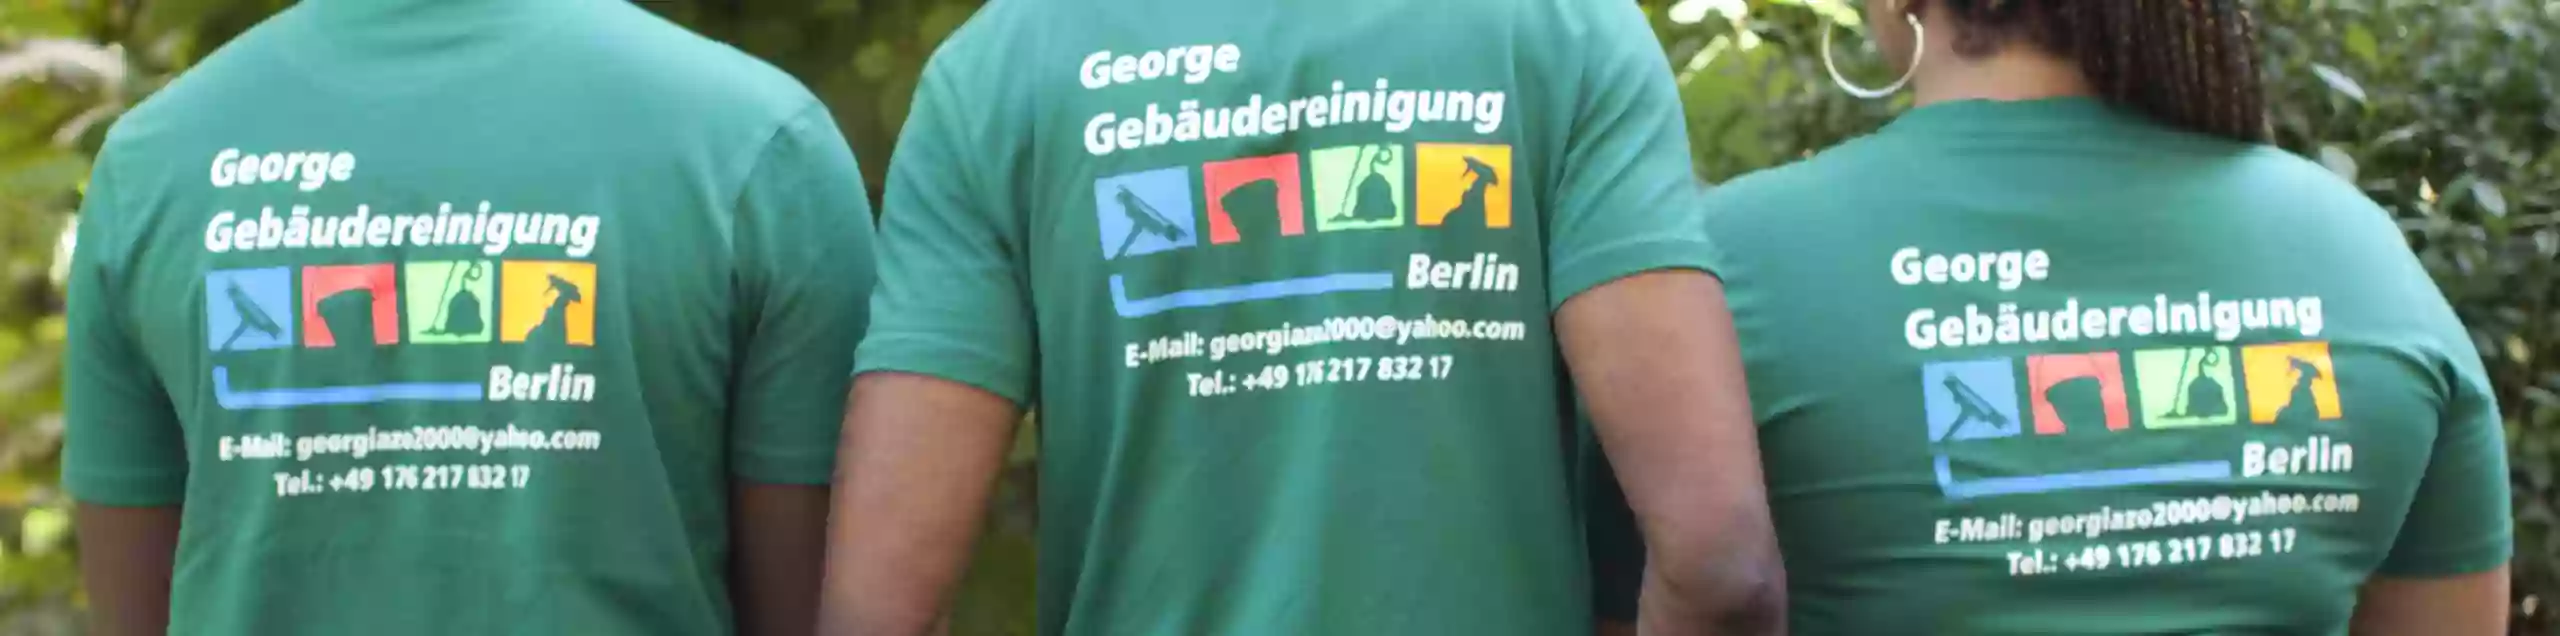 George Gebäudereinigung Berlin